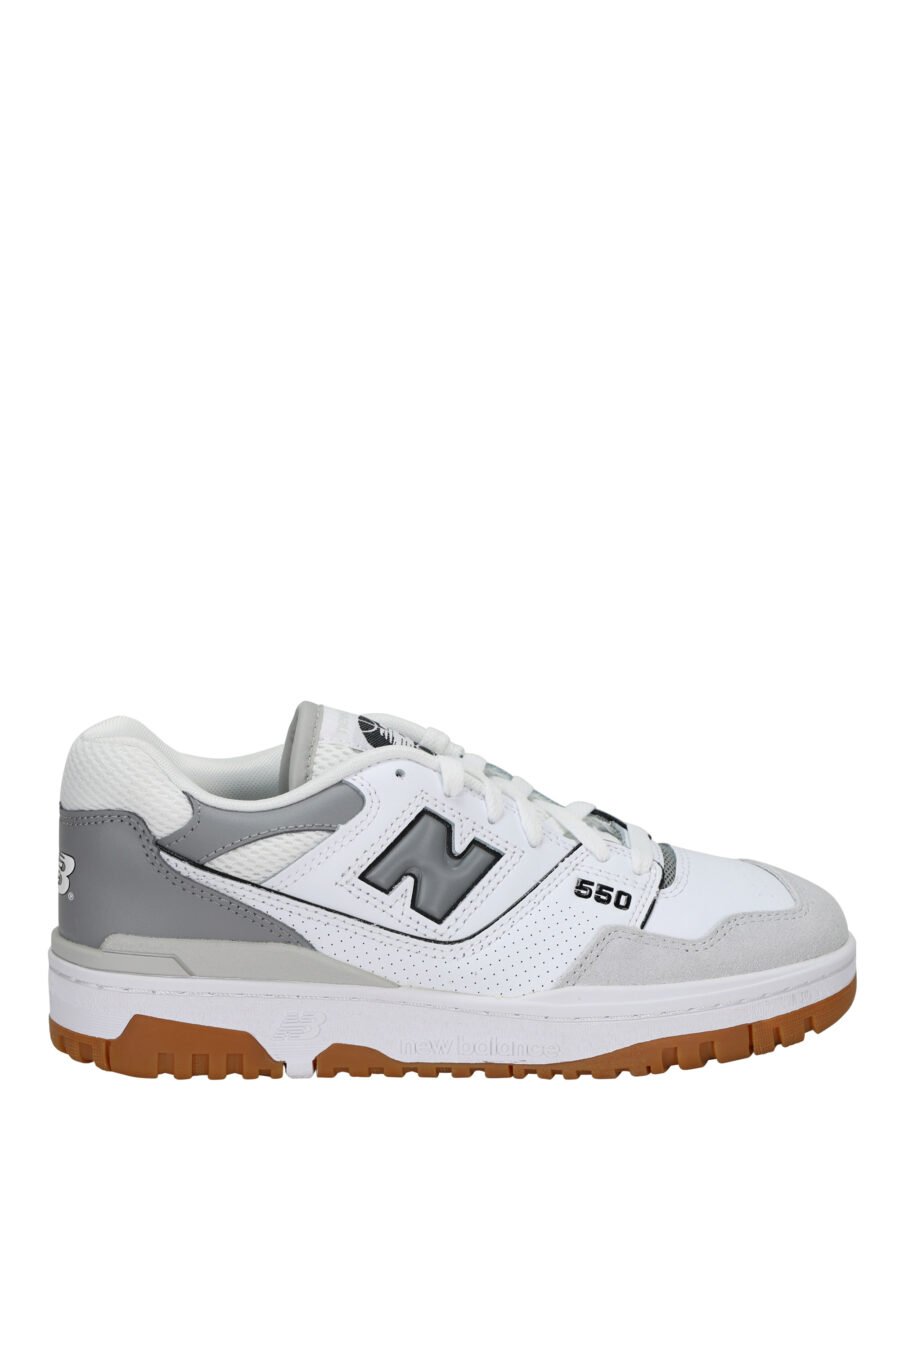 Zapatillas blancas con gris y suela marrón "550" con logo "N" gris - 197375689111